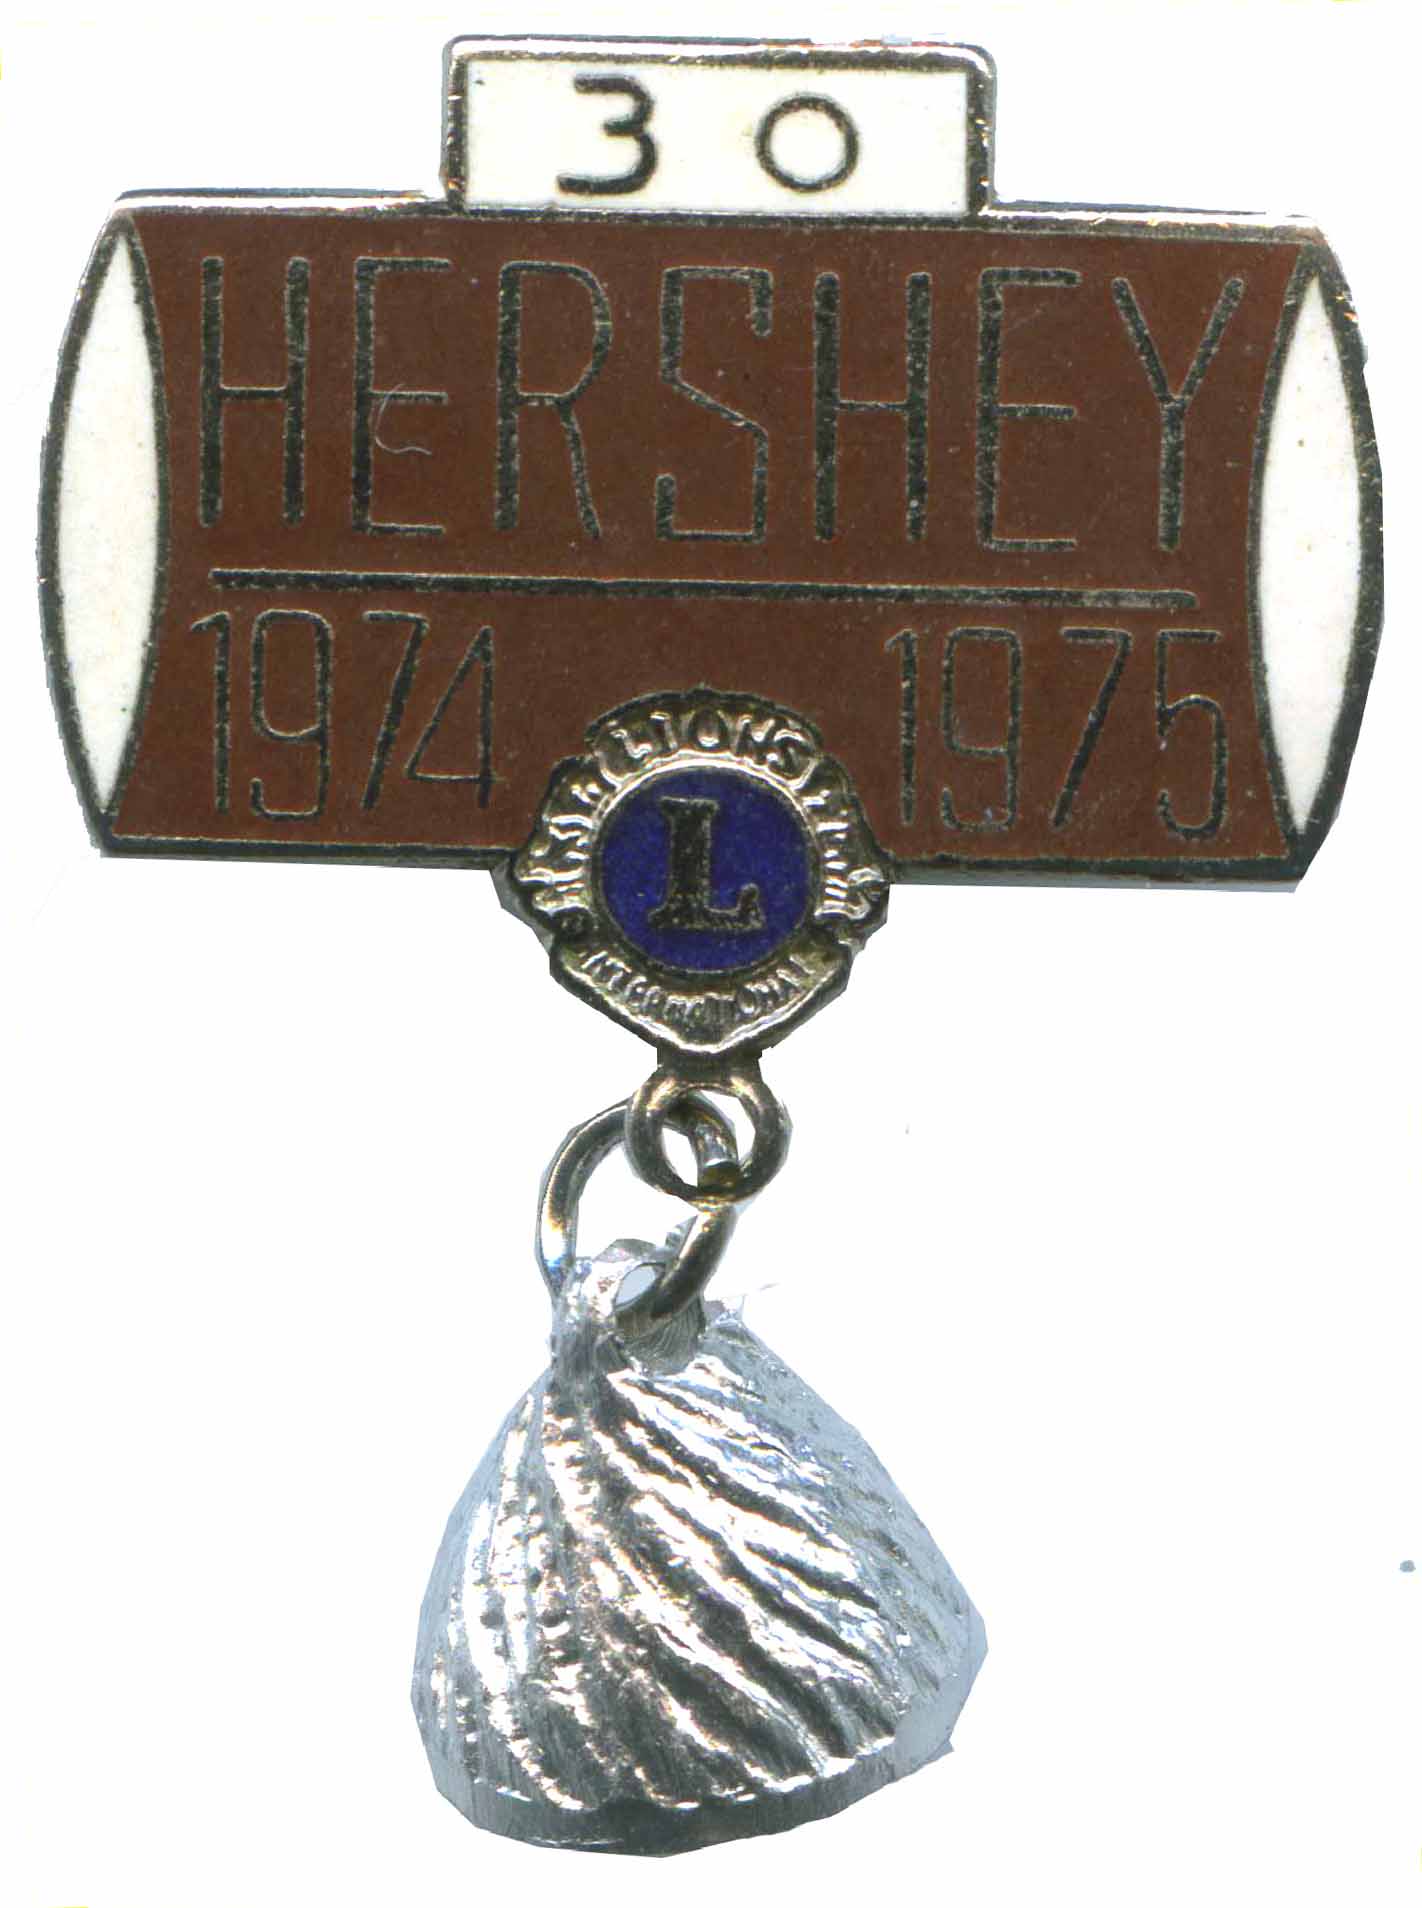 Hershey Pin B 1975